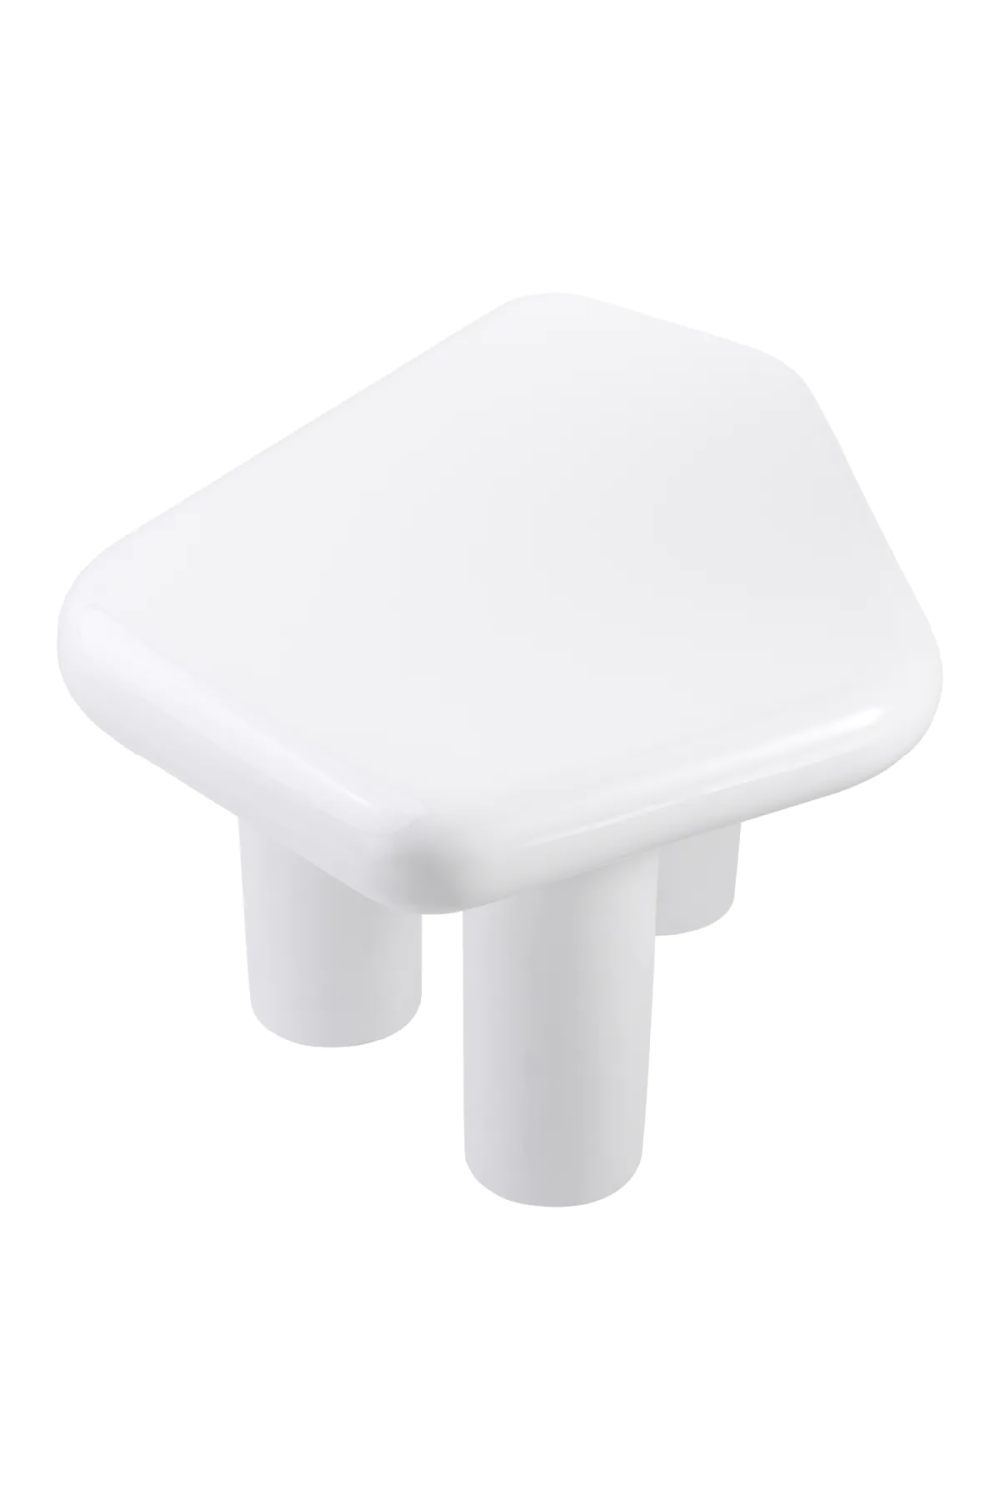 White Free Form Side Table | Eichholtz Matiz | Oroa.com